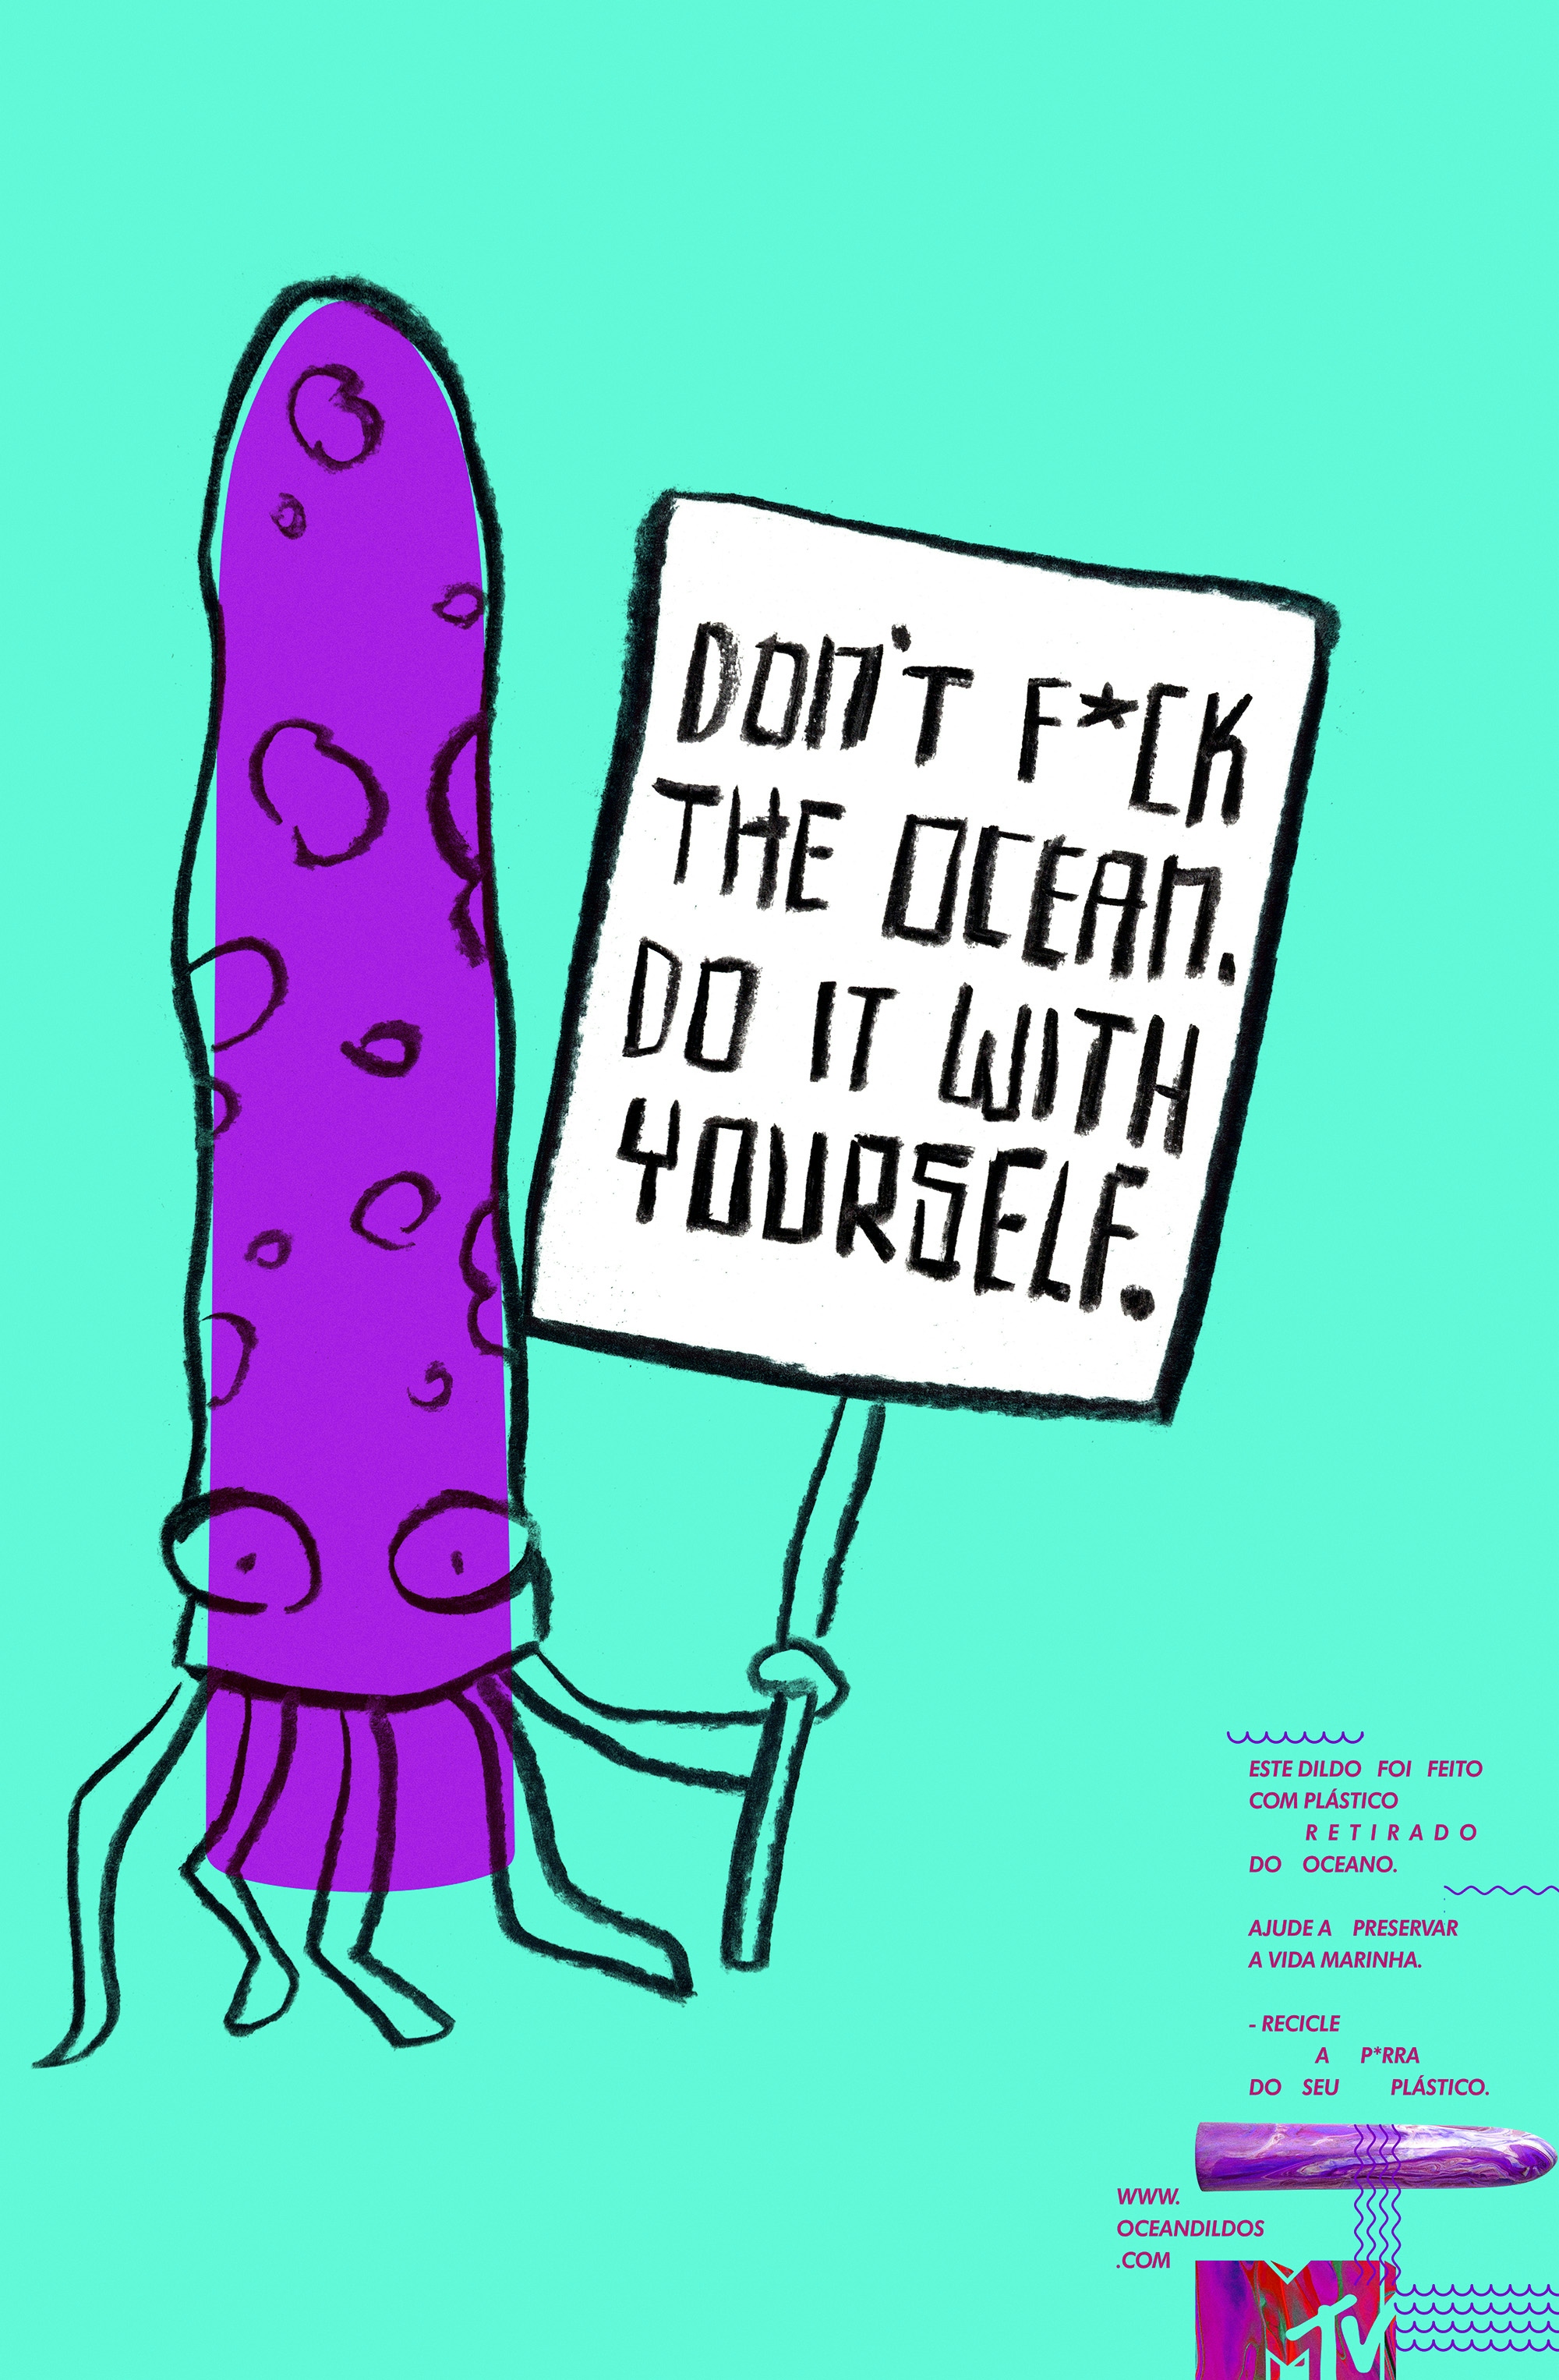 Ilustração lula roxa com cartaz escrito "Don't fuck the ocean. Do it with your self"